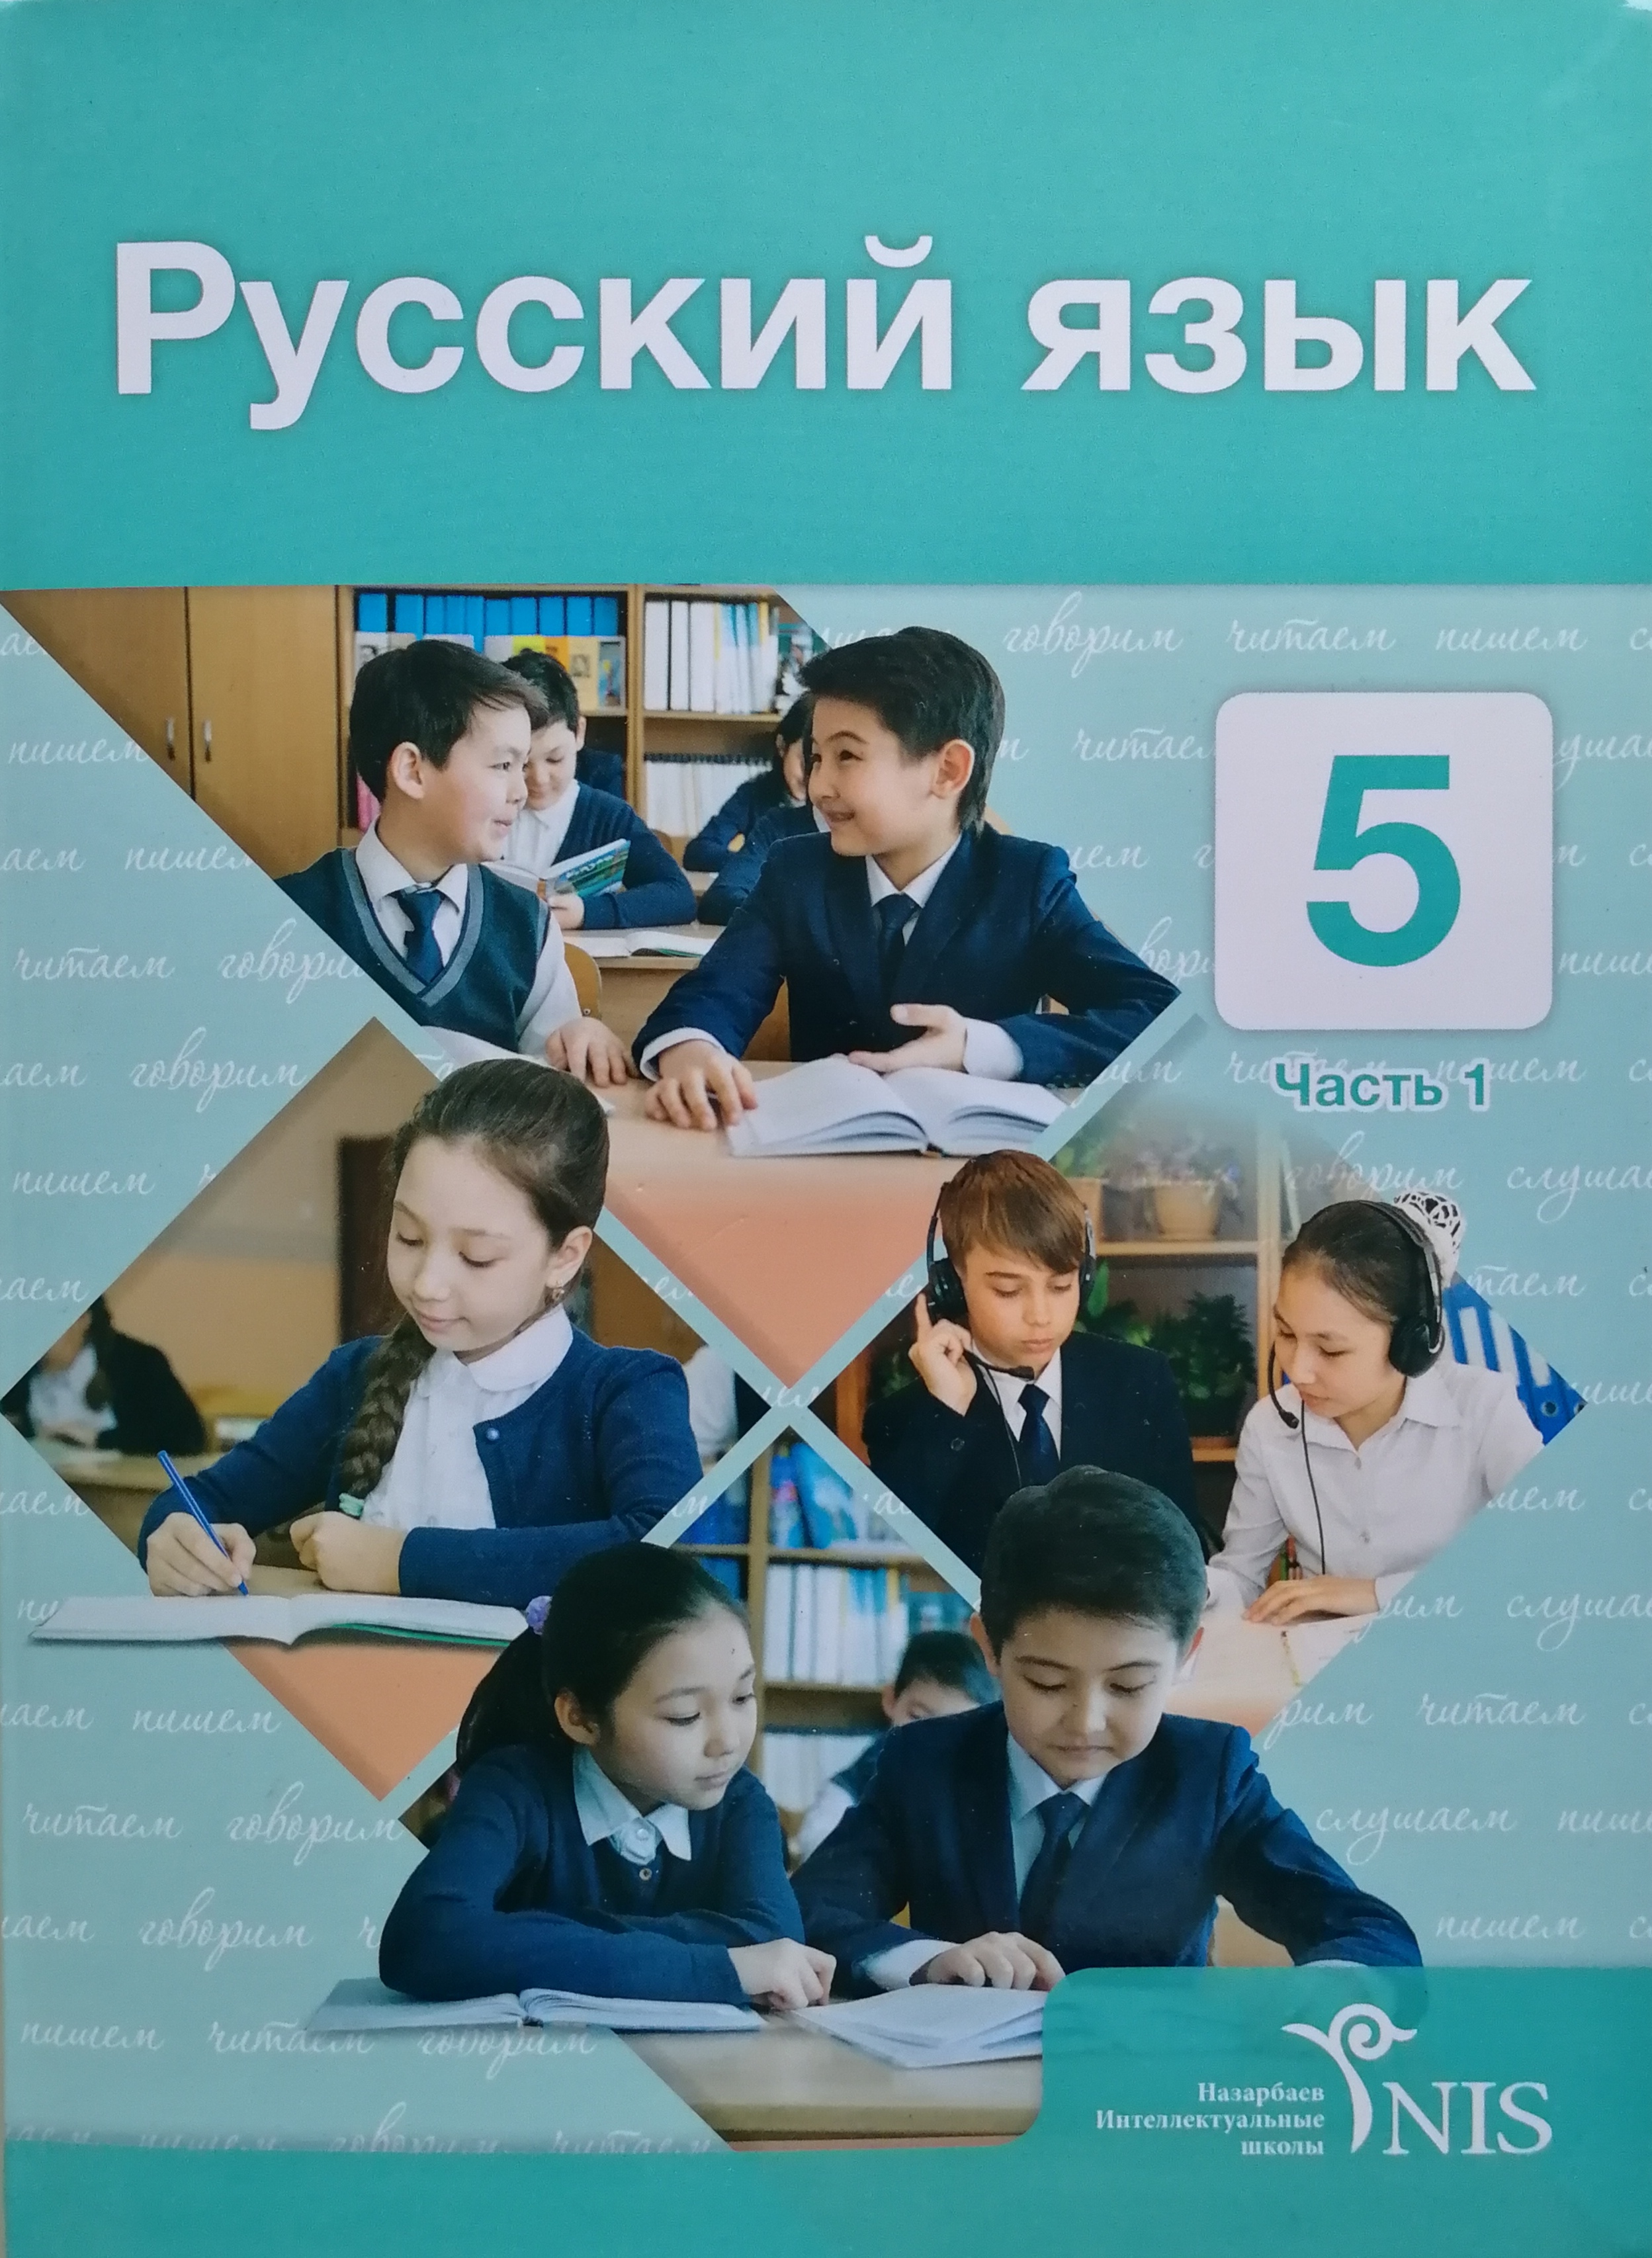 5- класс с русским языком обучения